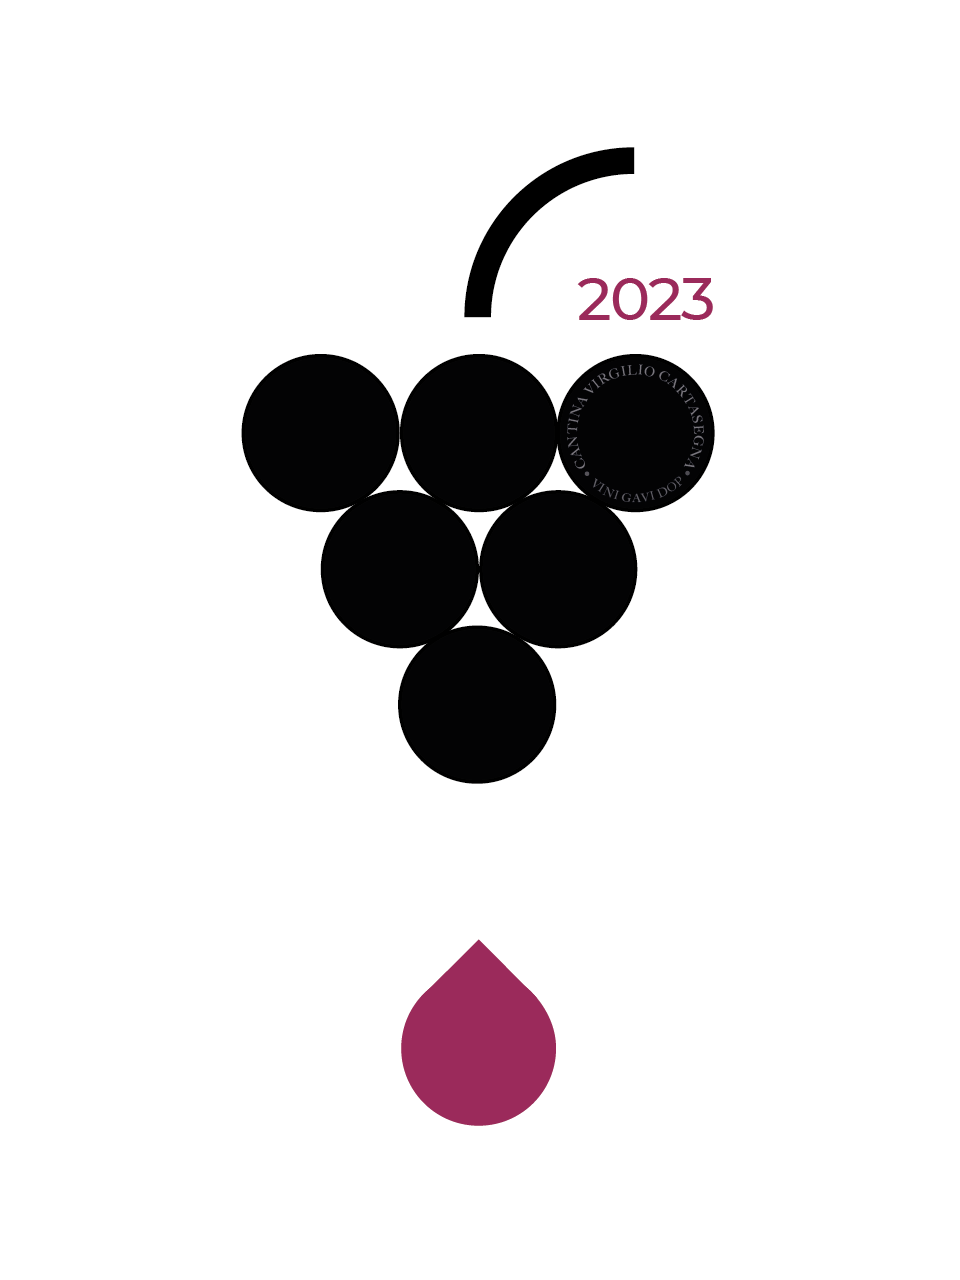 Etichetta per bottiglie di vino: su sfondo bianco da un grappolo d'uva nero, stilizzato cade una goccia rossa. Anno 2023